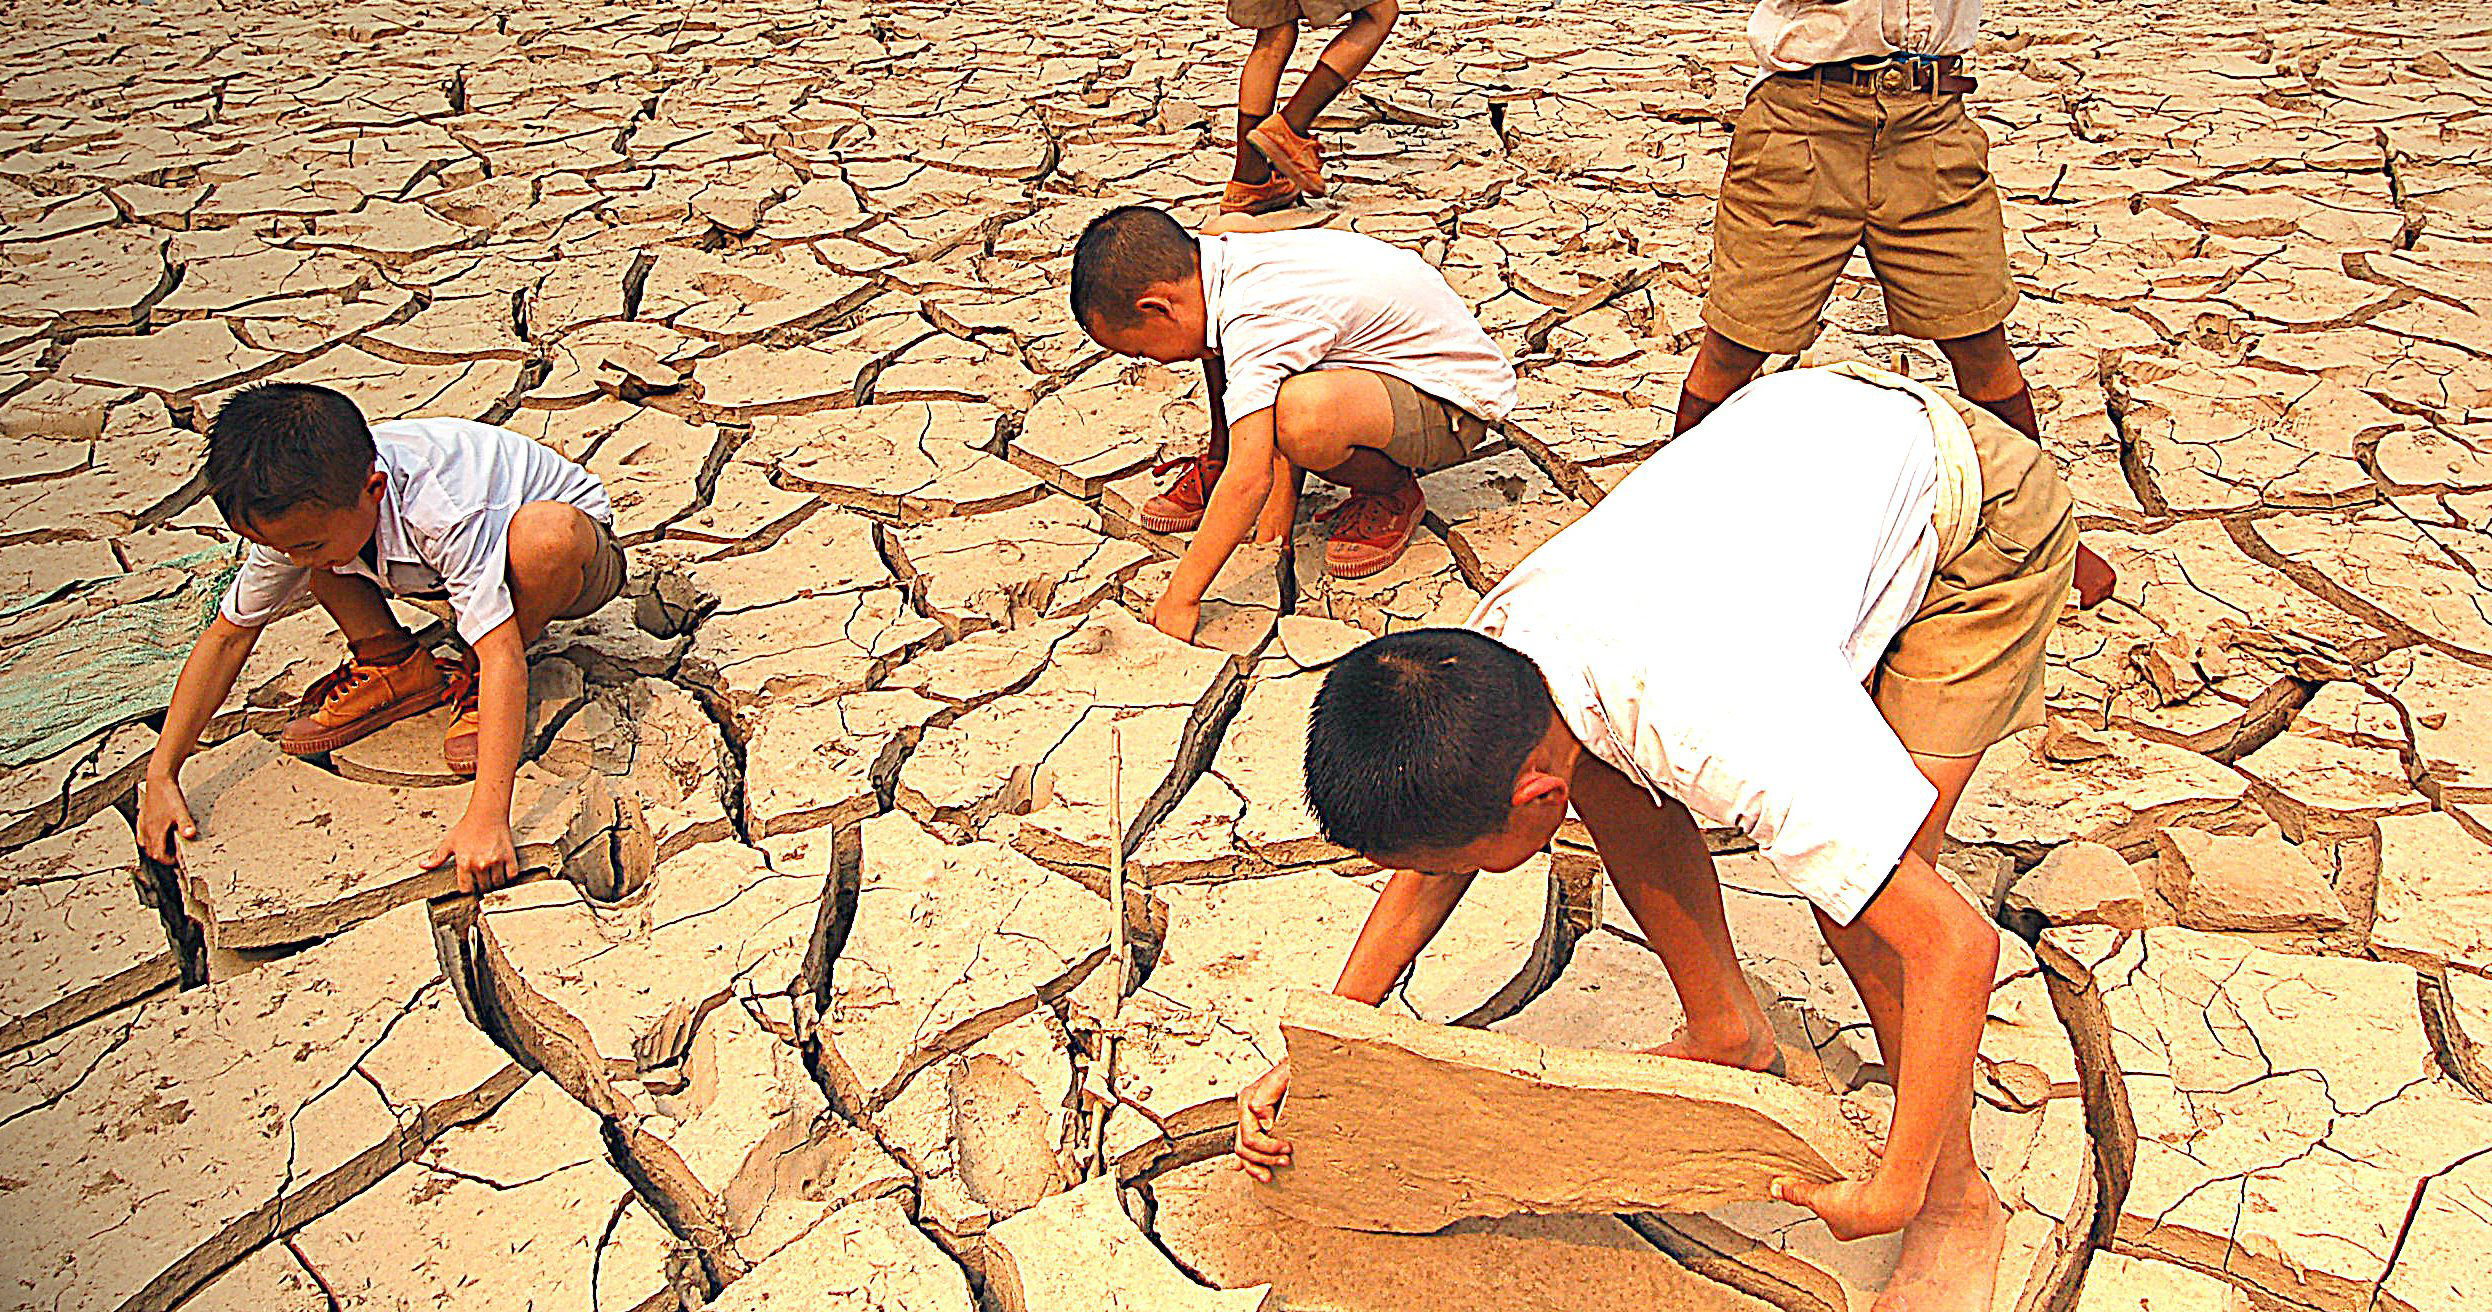 La sequía ya comienza a afectar a los países de Asia. Tailandia comenzará a utilizar químicos para inducir la lluvia en su territorio.